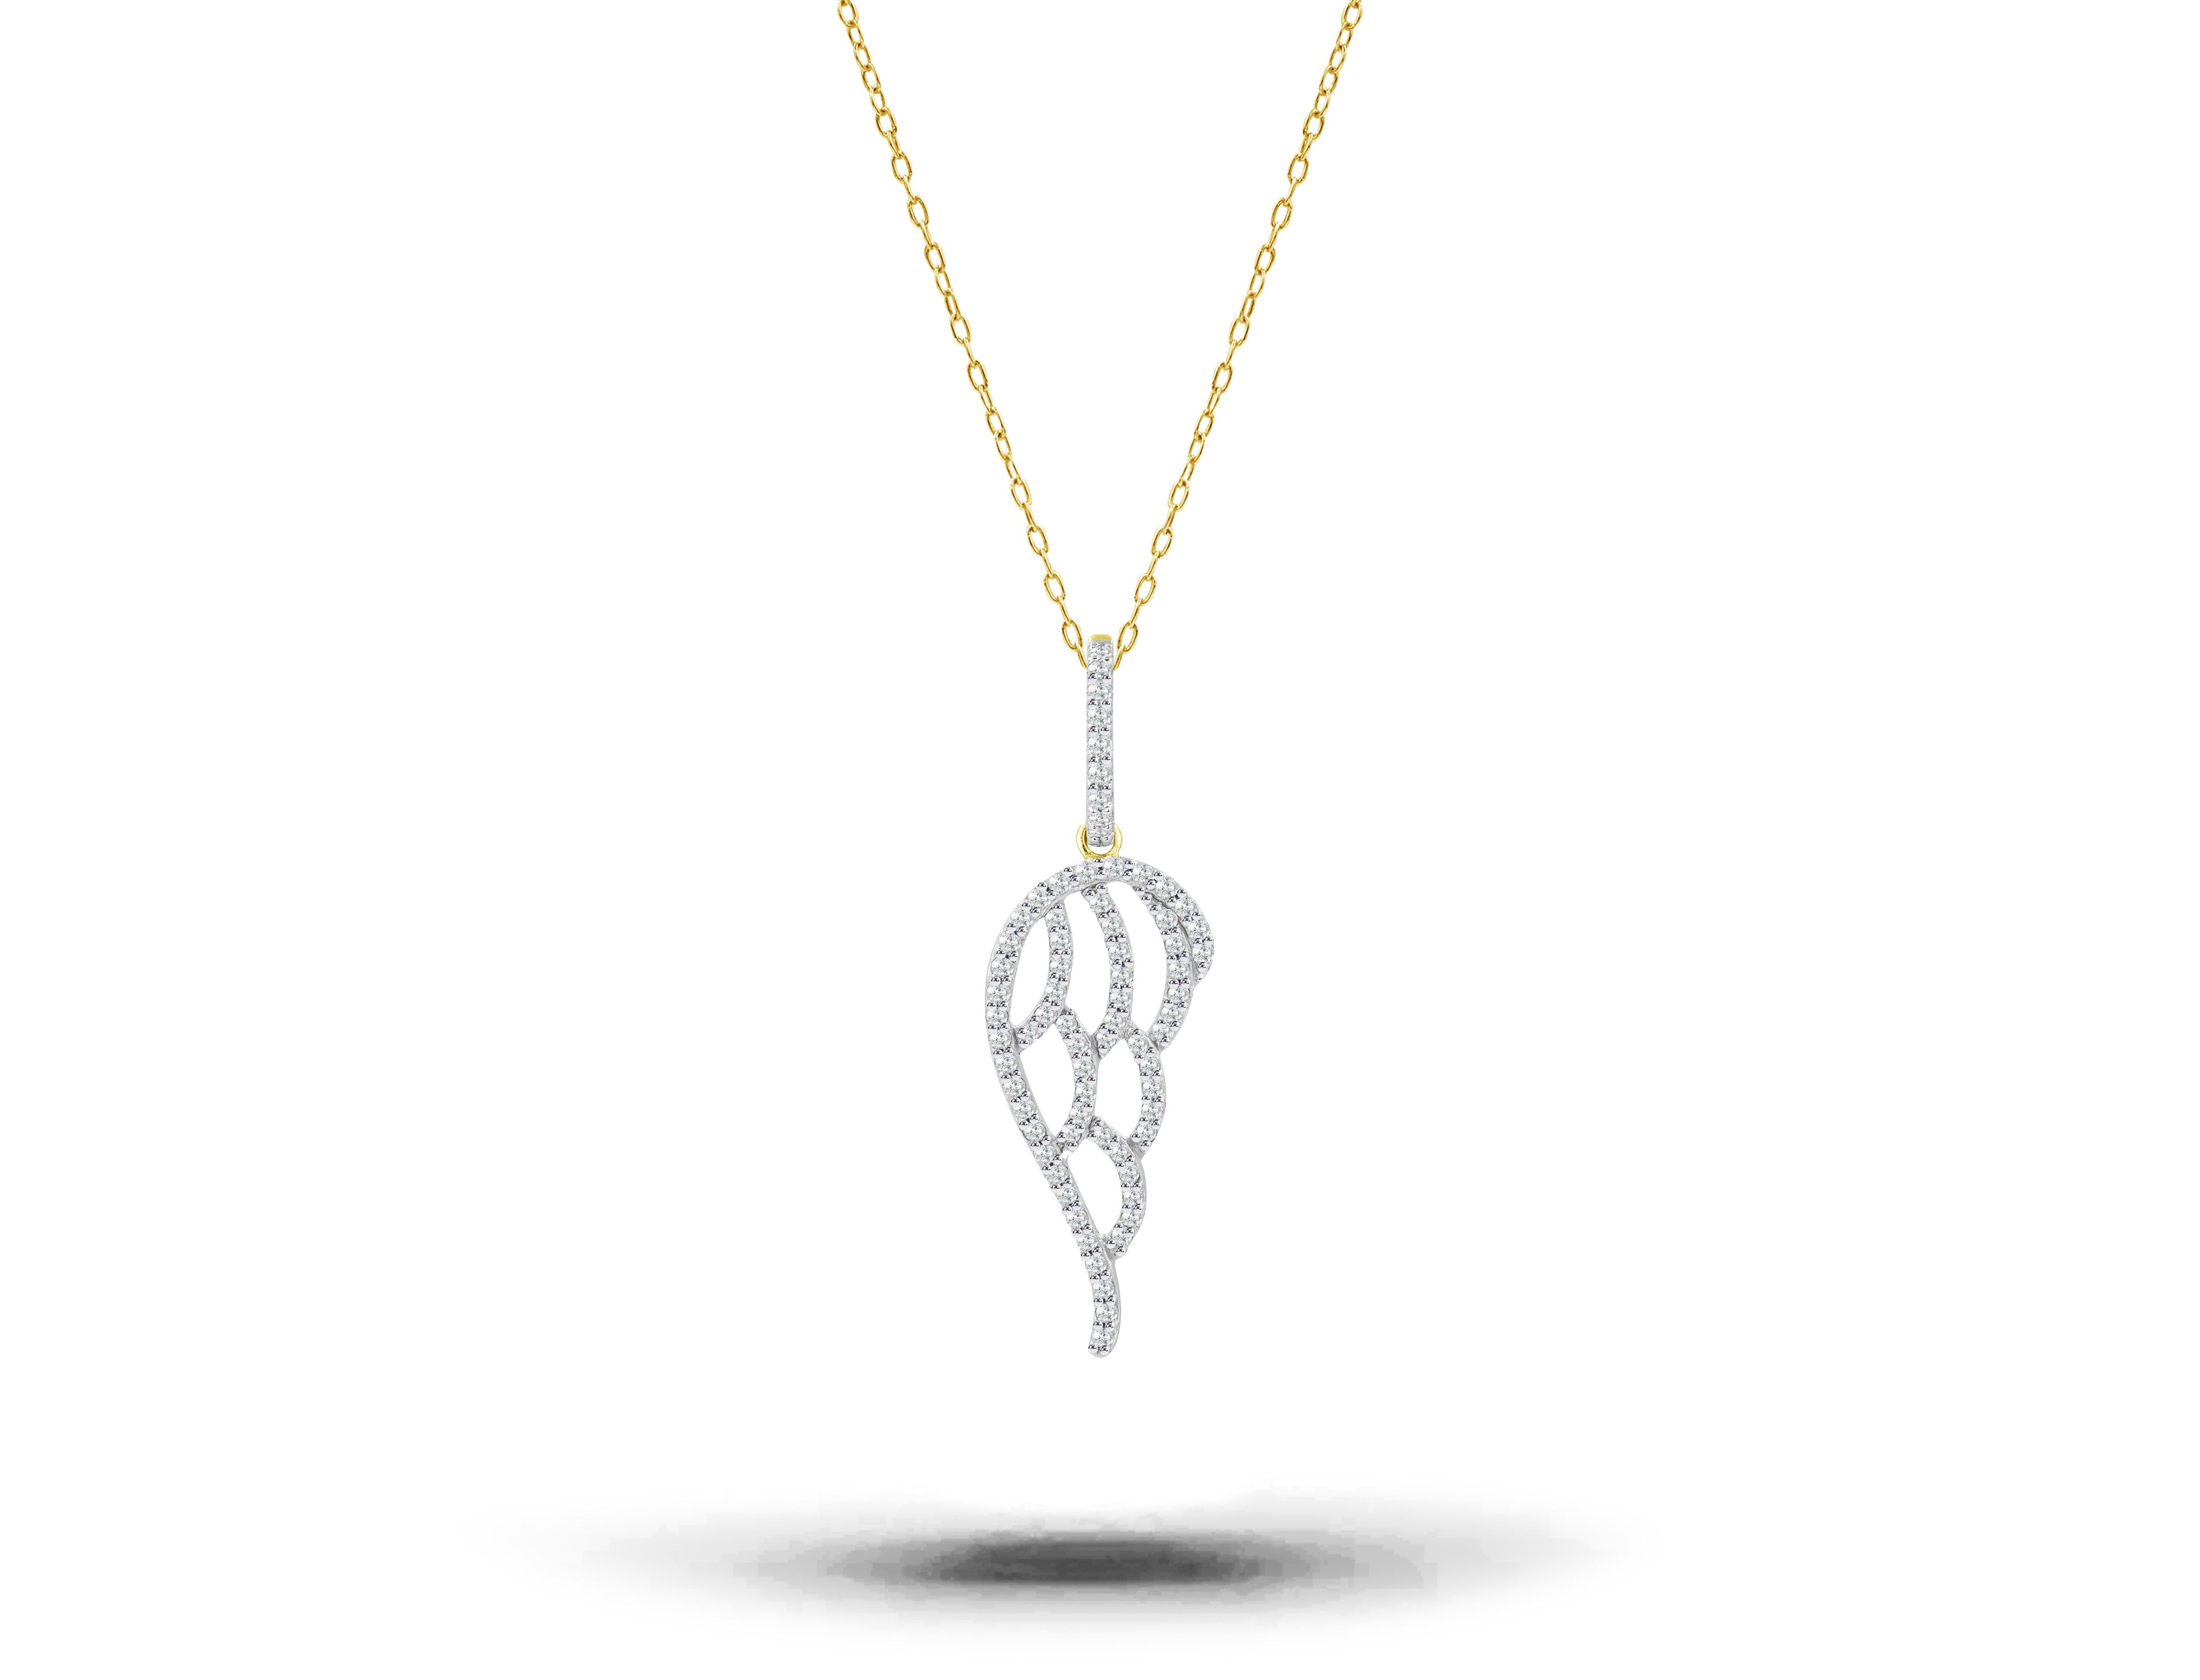 Collier Aile d'ange en diamant en or rose / or blanc / or jaune 18K.

Un collier d'ailes d'Anges en or massif et diamant est réalisé avec la perfection de l'art. Un cadeau de protection spirituelle pour vous-même ou vos proches. L'aile d'ange